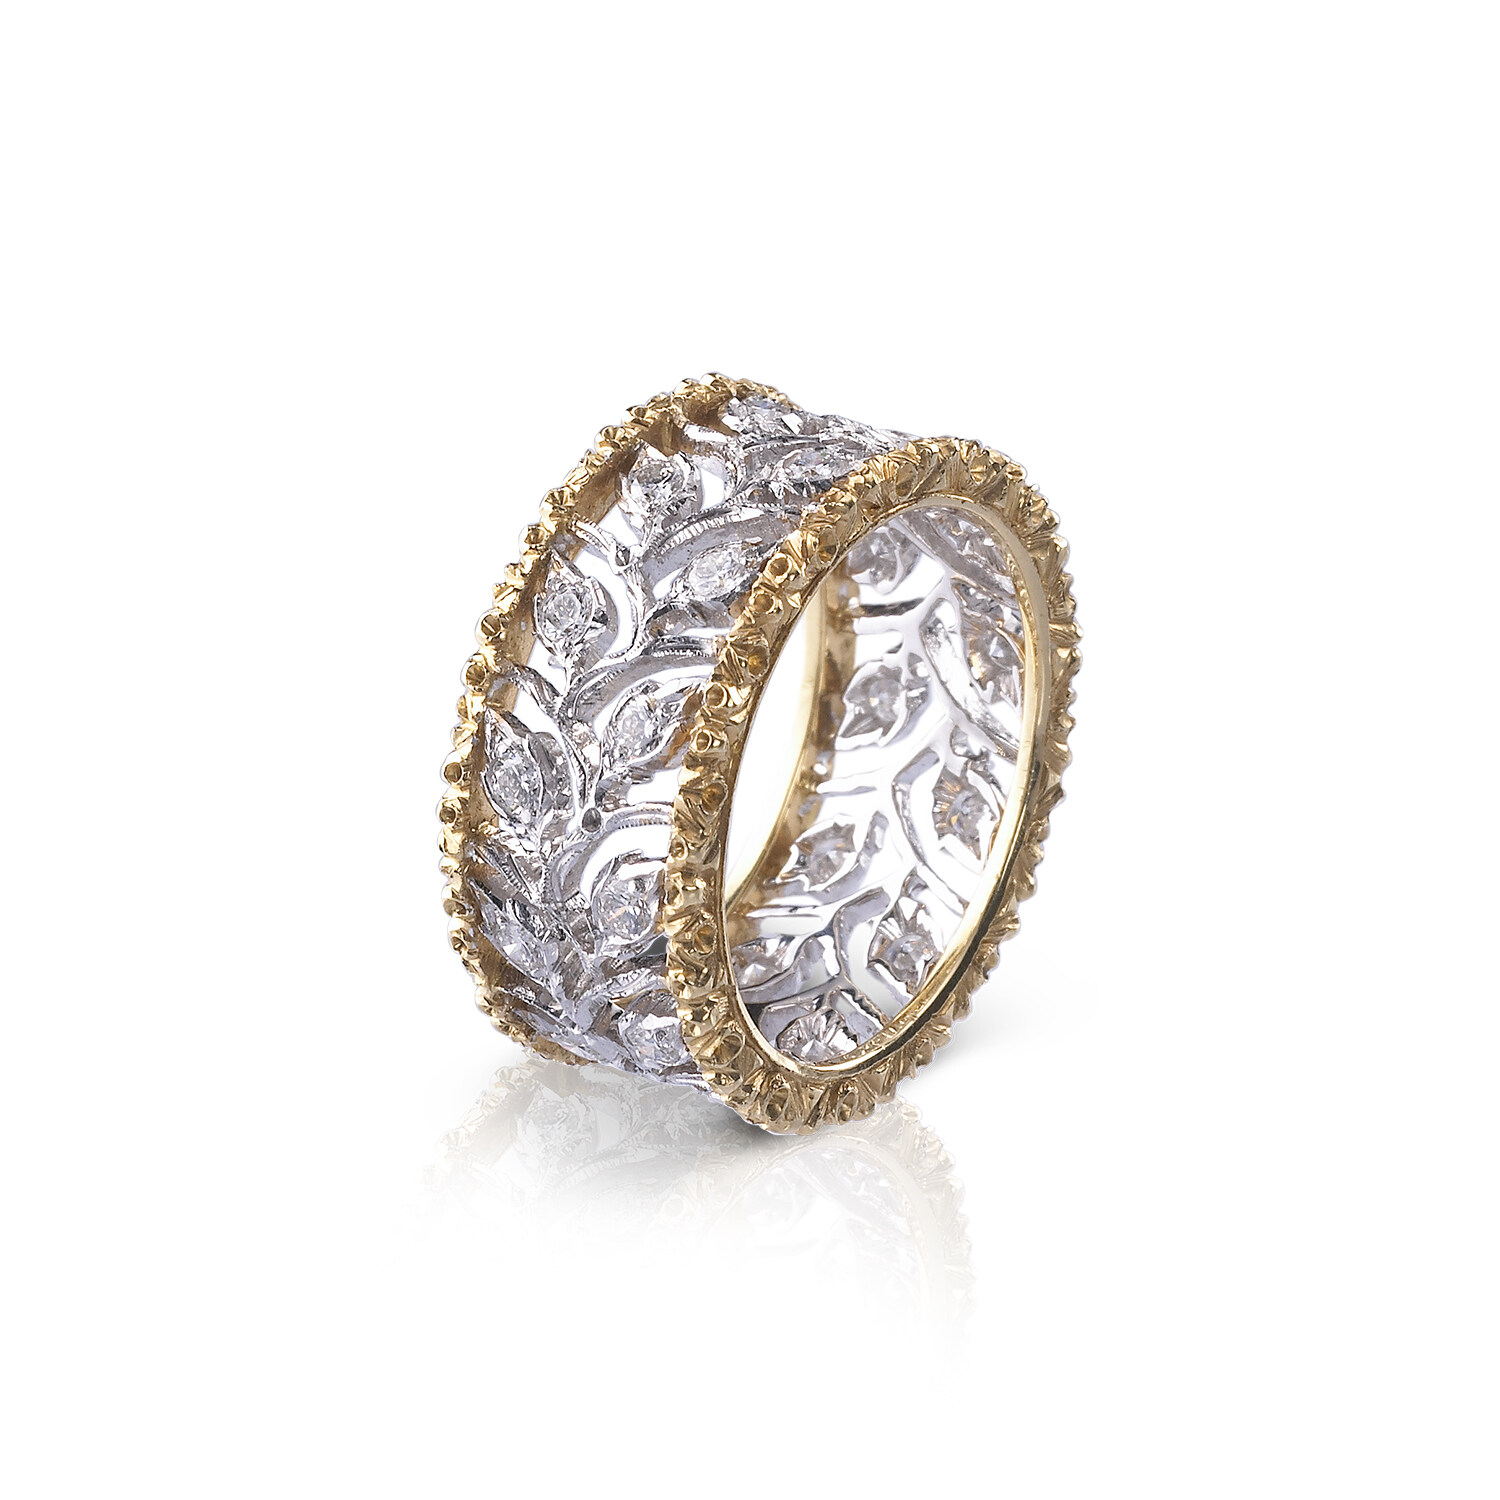 飾以黃金飾邊的Ramage戒指，鮮明而不失優雅，適合簡約以至隆重的造型，是高